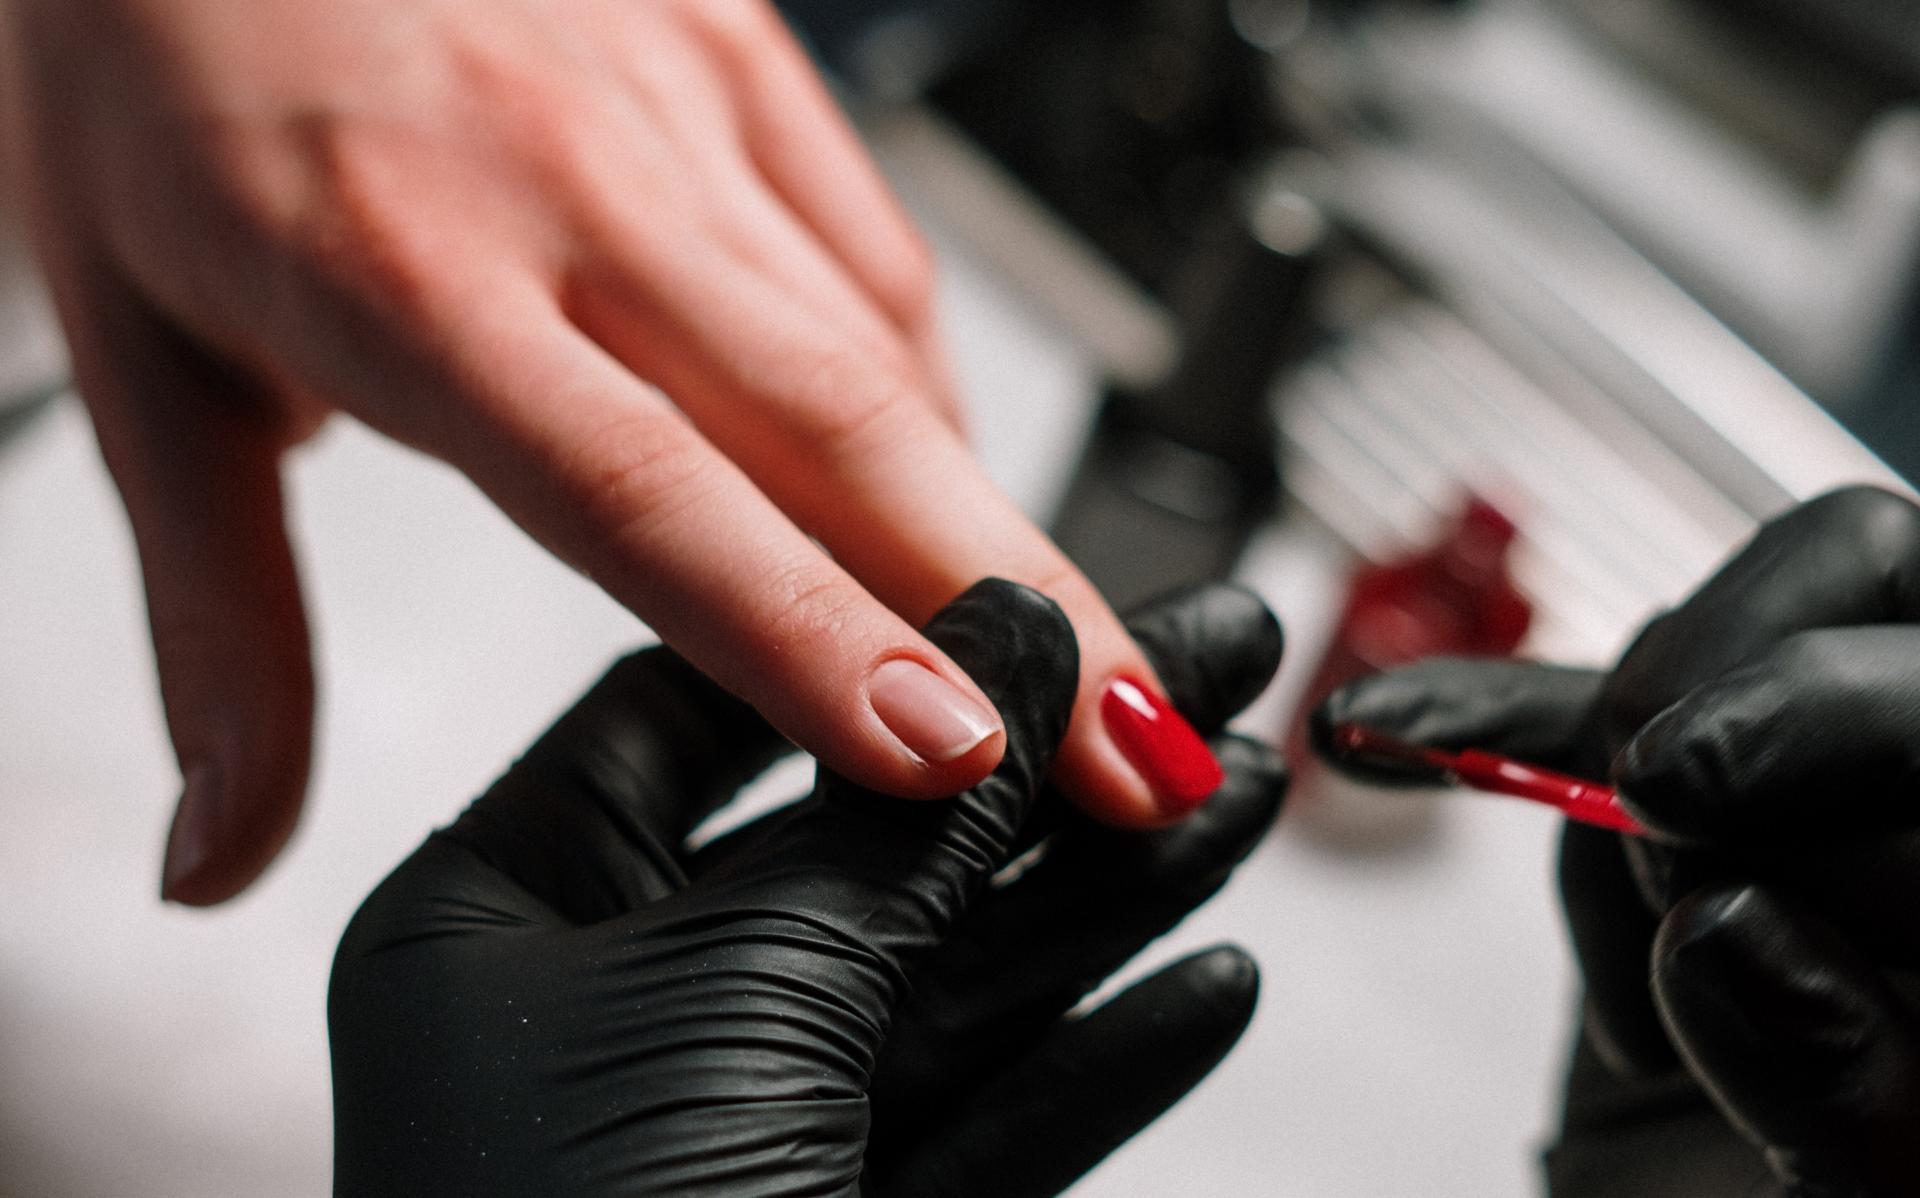 Eine Frau ist im Nagelstudio und lässt sich ihre Nägel neu lackieren. Dafür können UV-Lampen verwendet werden, die negative 